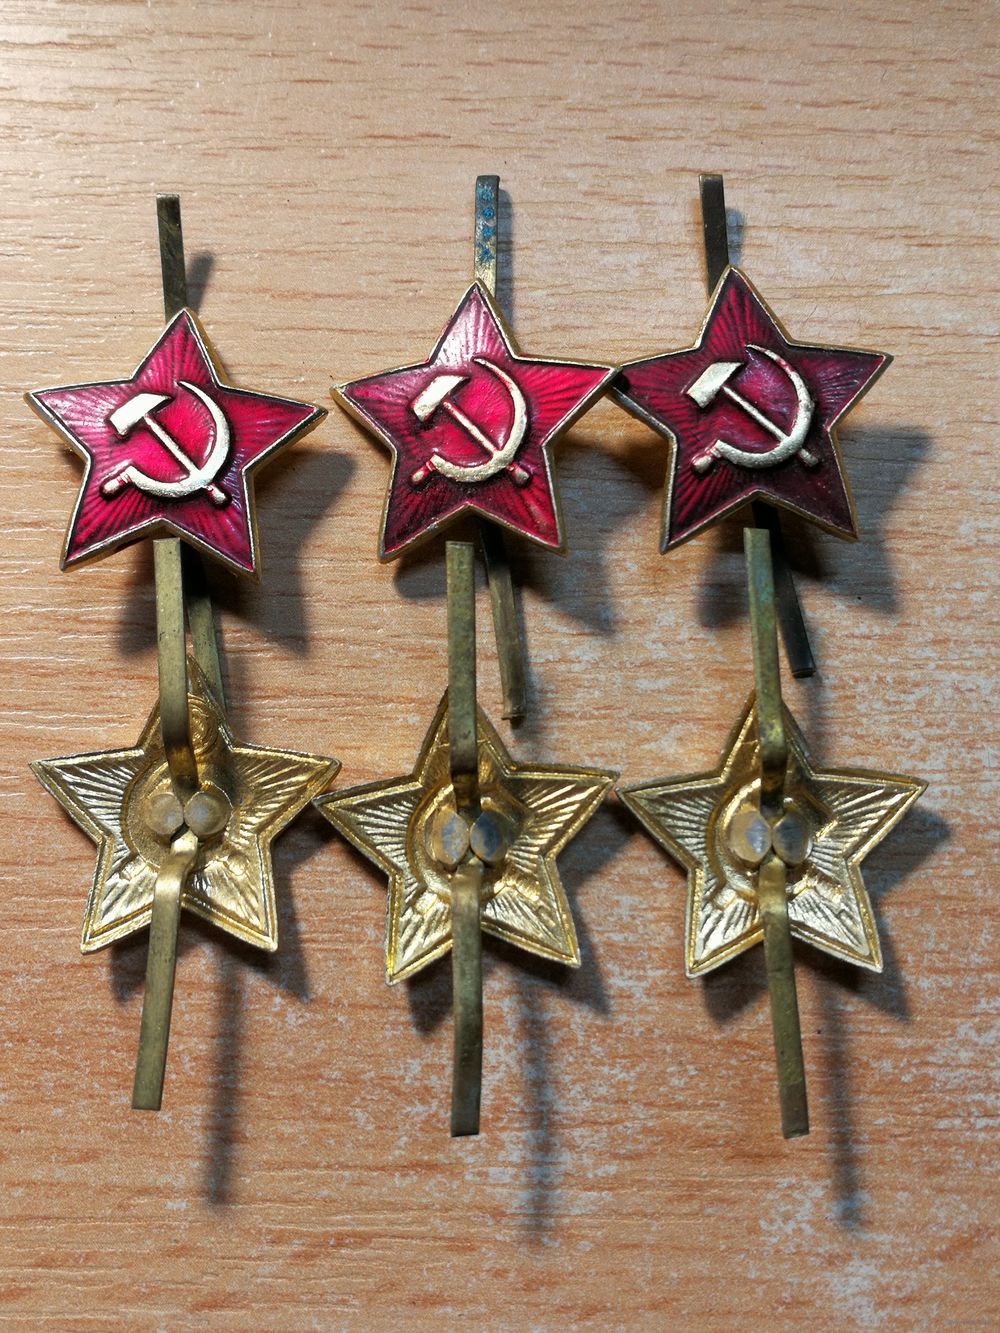 Звезда на пилотку рядового Советской Армии